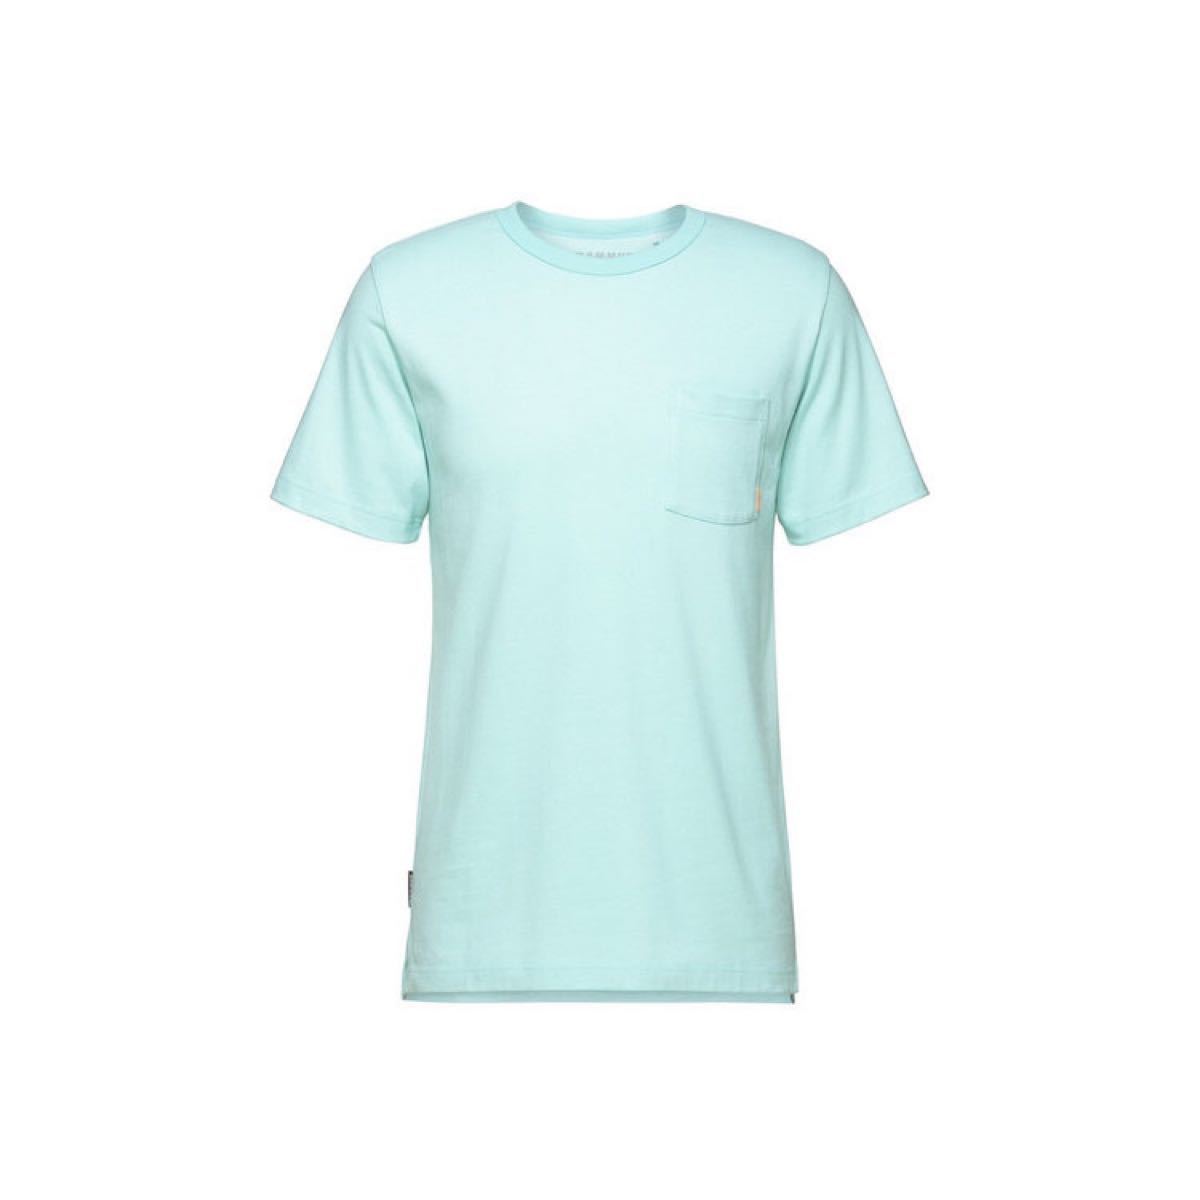 MAMMUT マムート 半袖Tシャツ ヘビーコットンTシャツ アジアンフィット ブルー(青) メンズL 新品